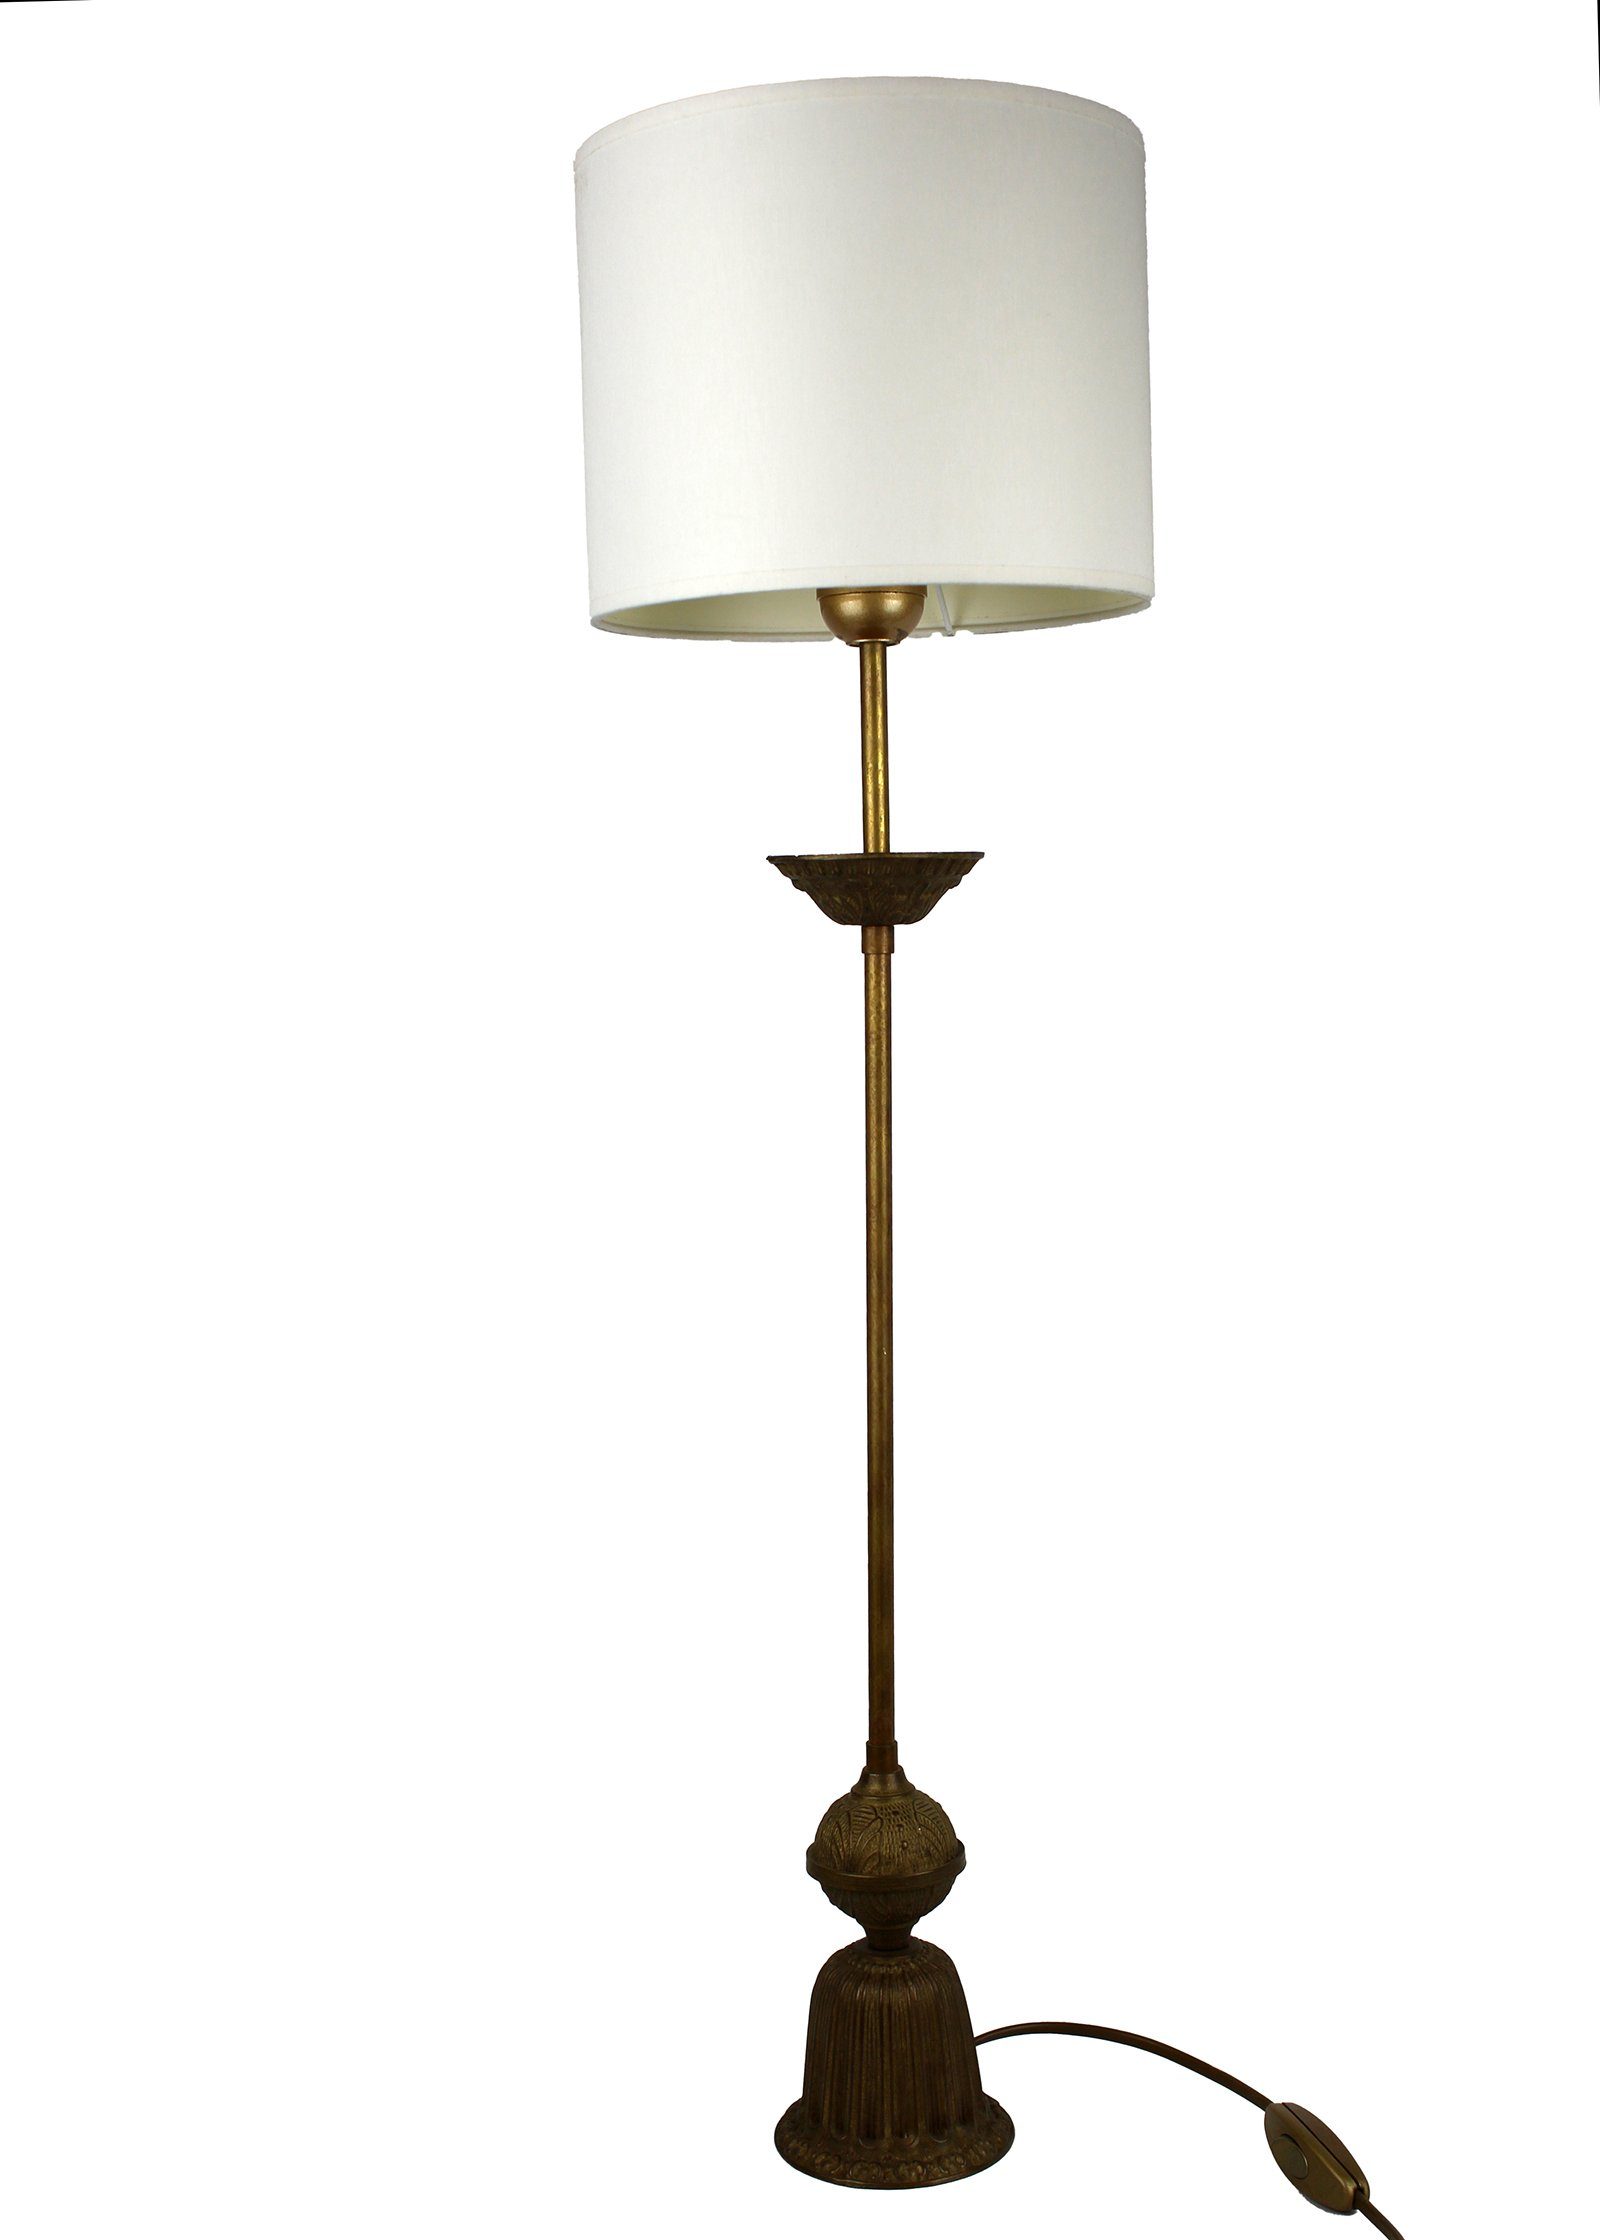 Signature Home Collection Tischleuchte Tischleuchte Altmessing mit Lampenschirm klassisch, ohne Leuchtmittel, warmweiß, handgefertigt in Italien gold farbig